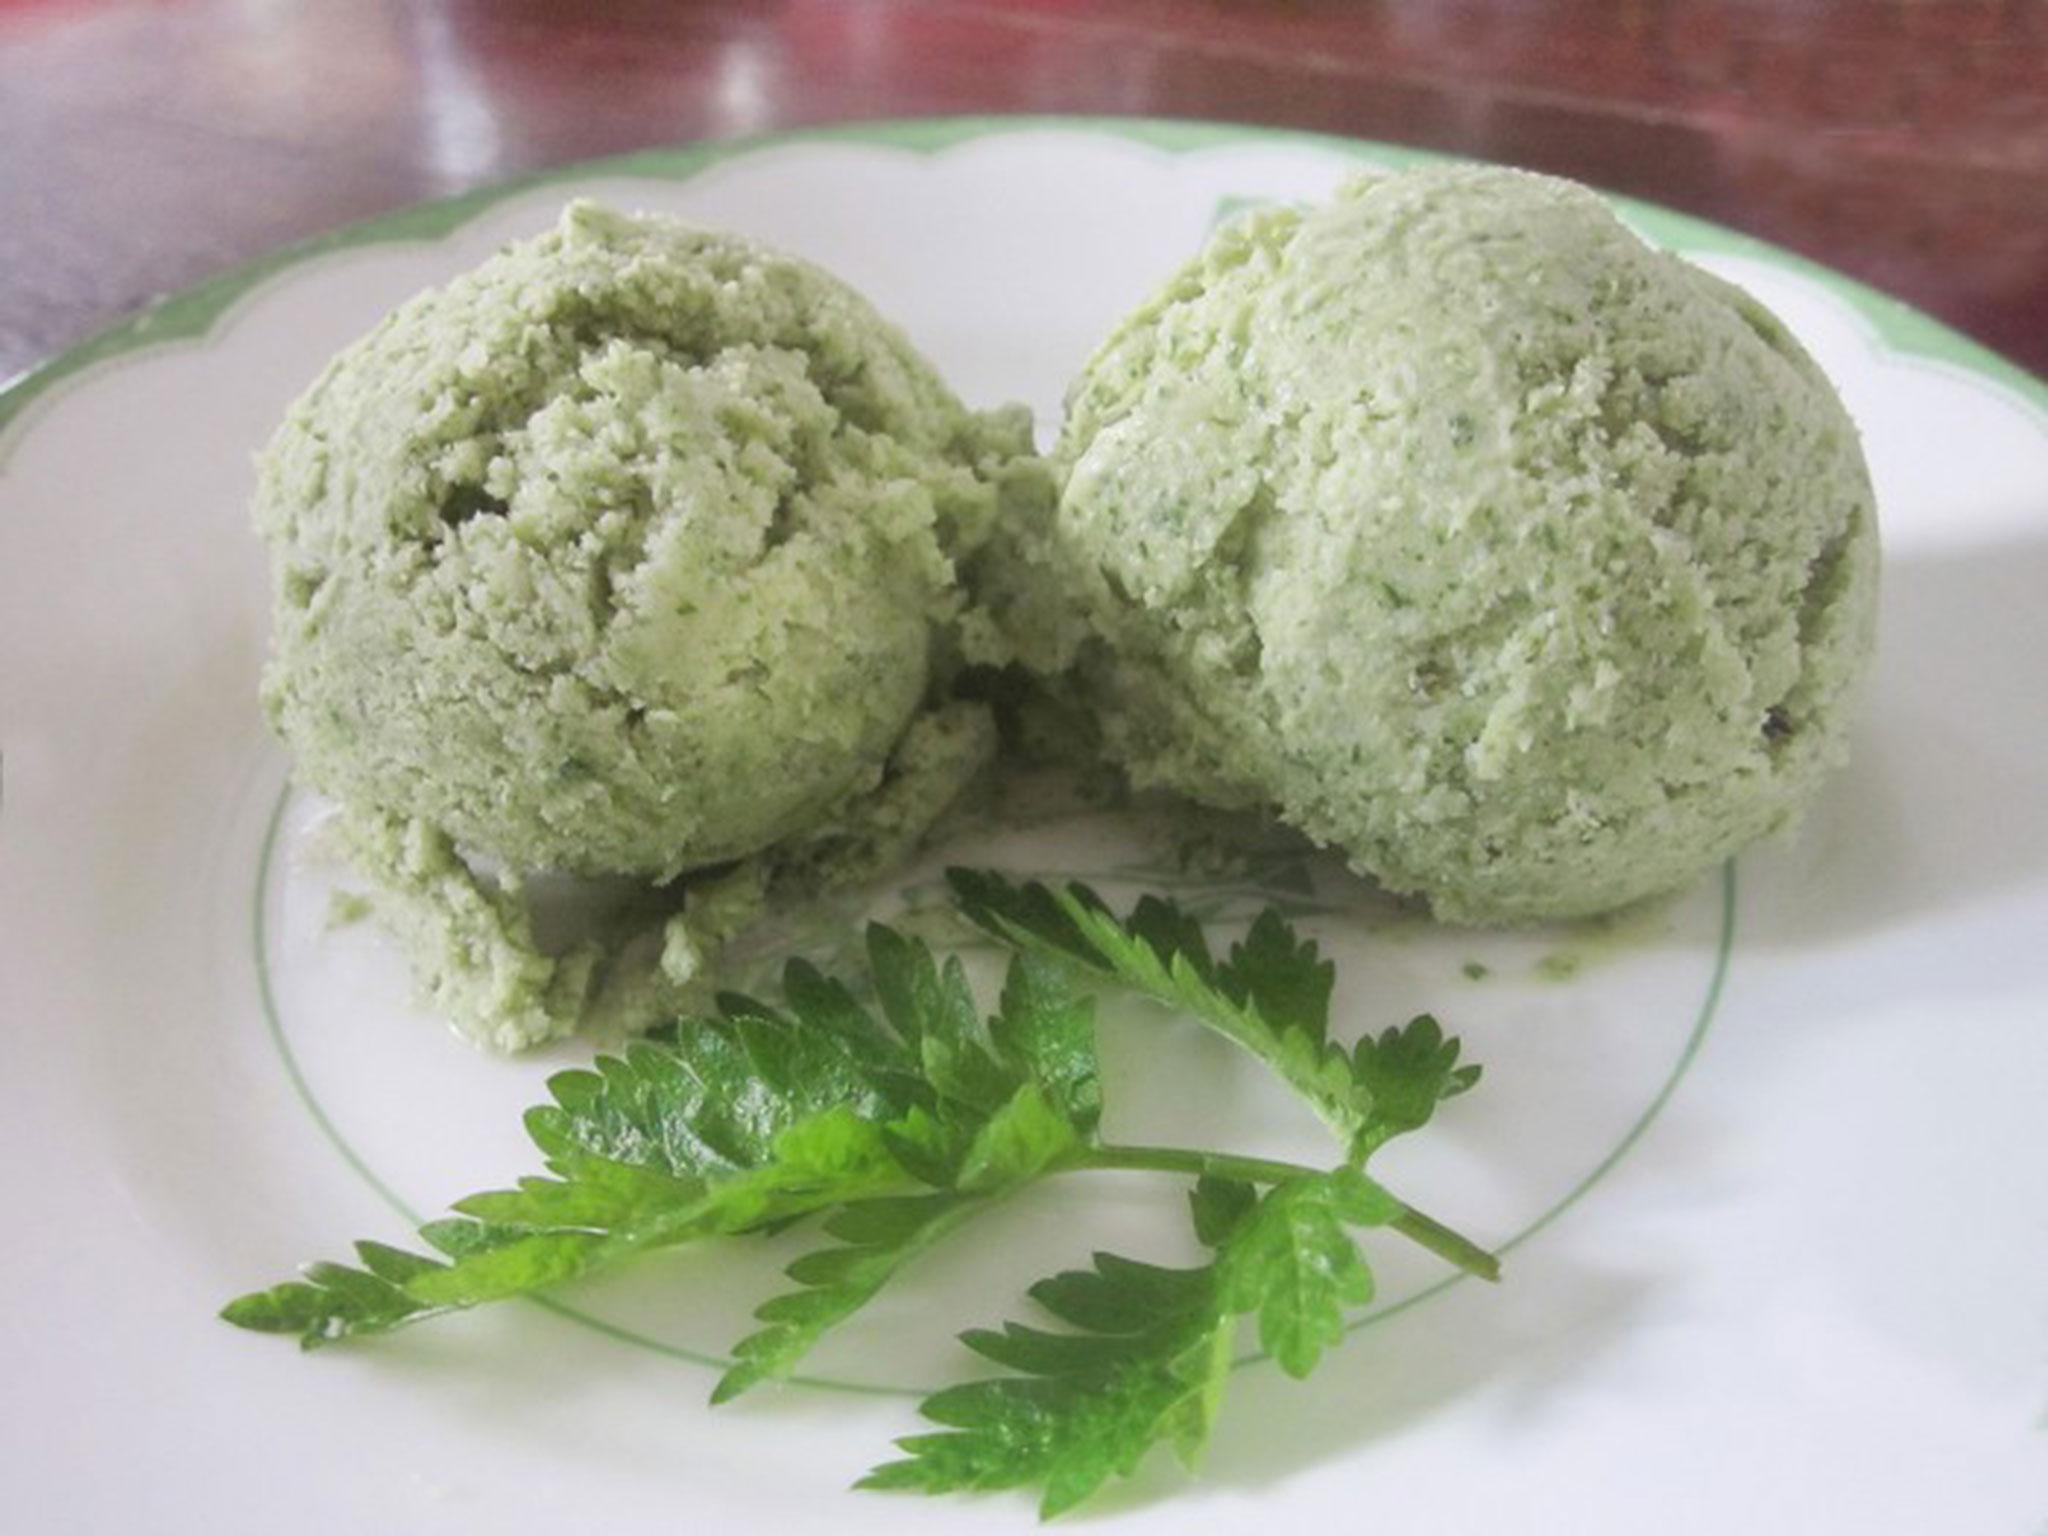 Cow parsley or wild chervil, ice cream